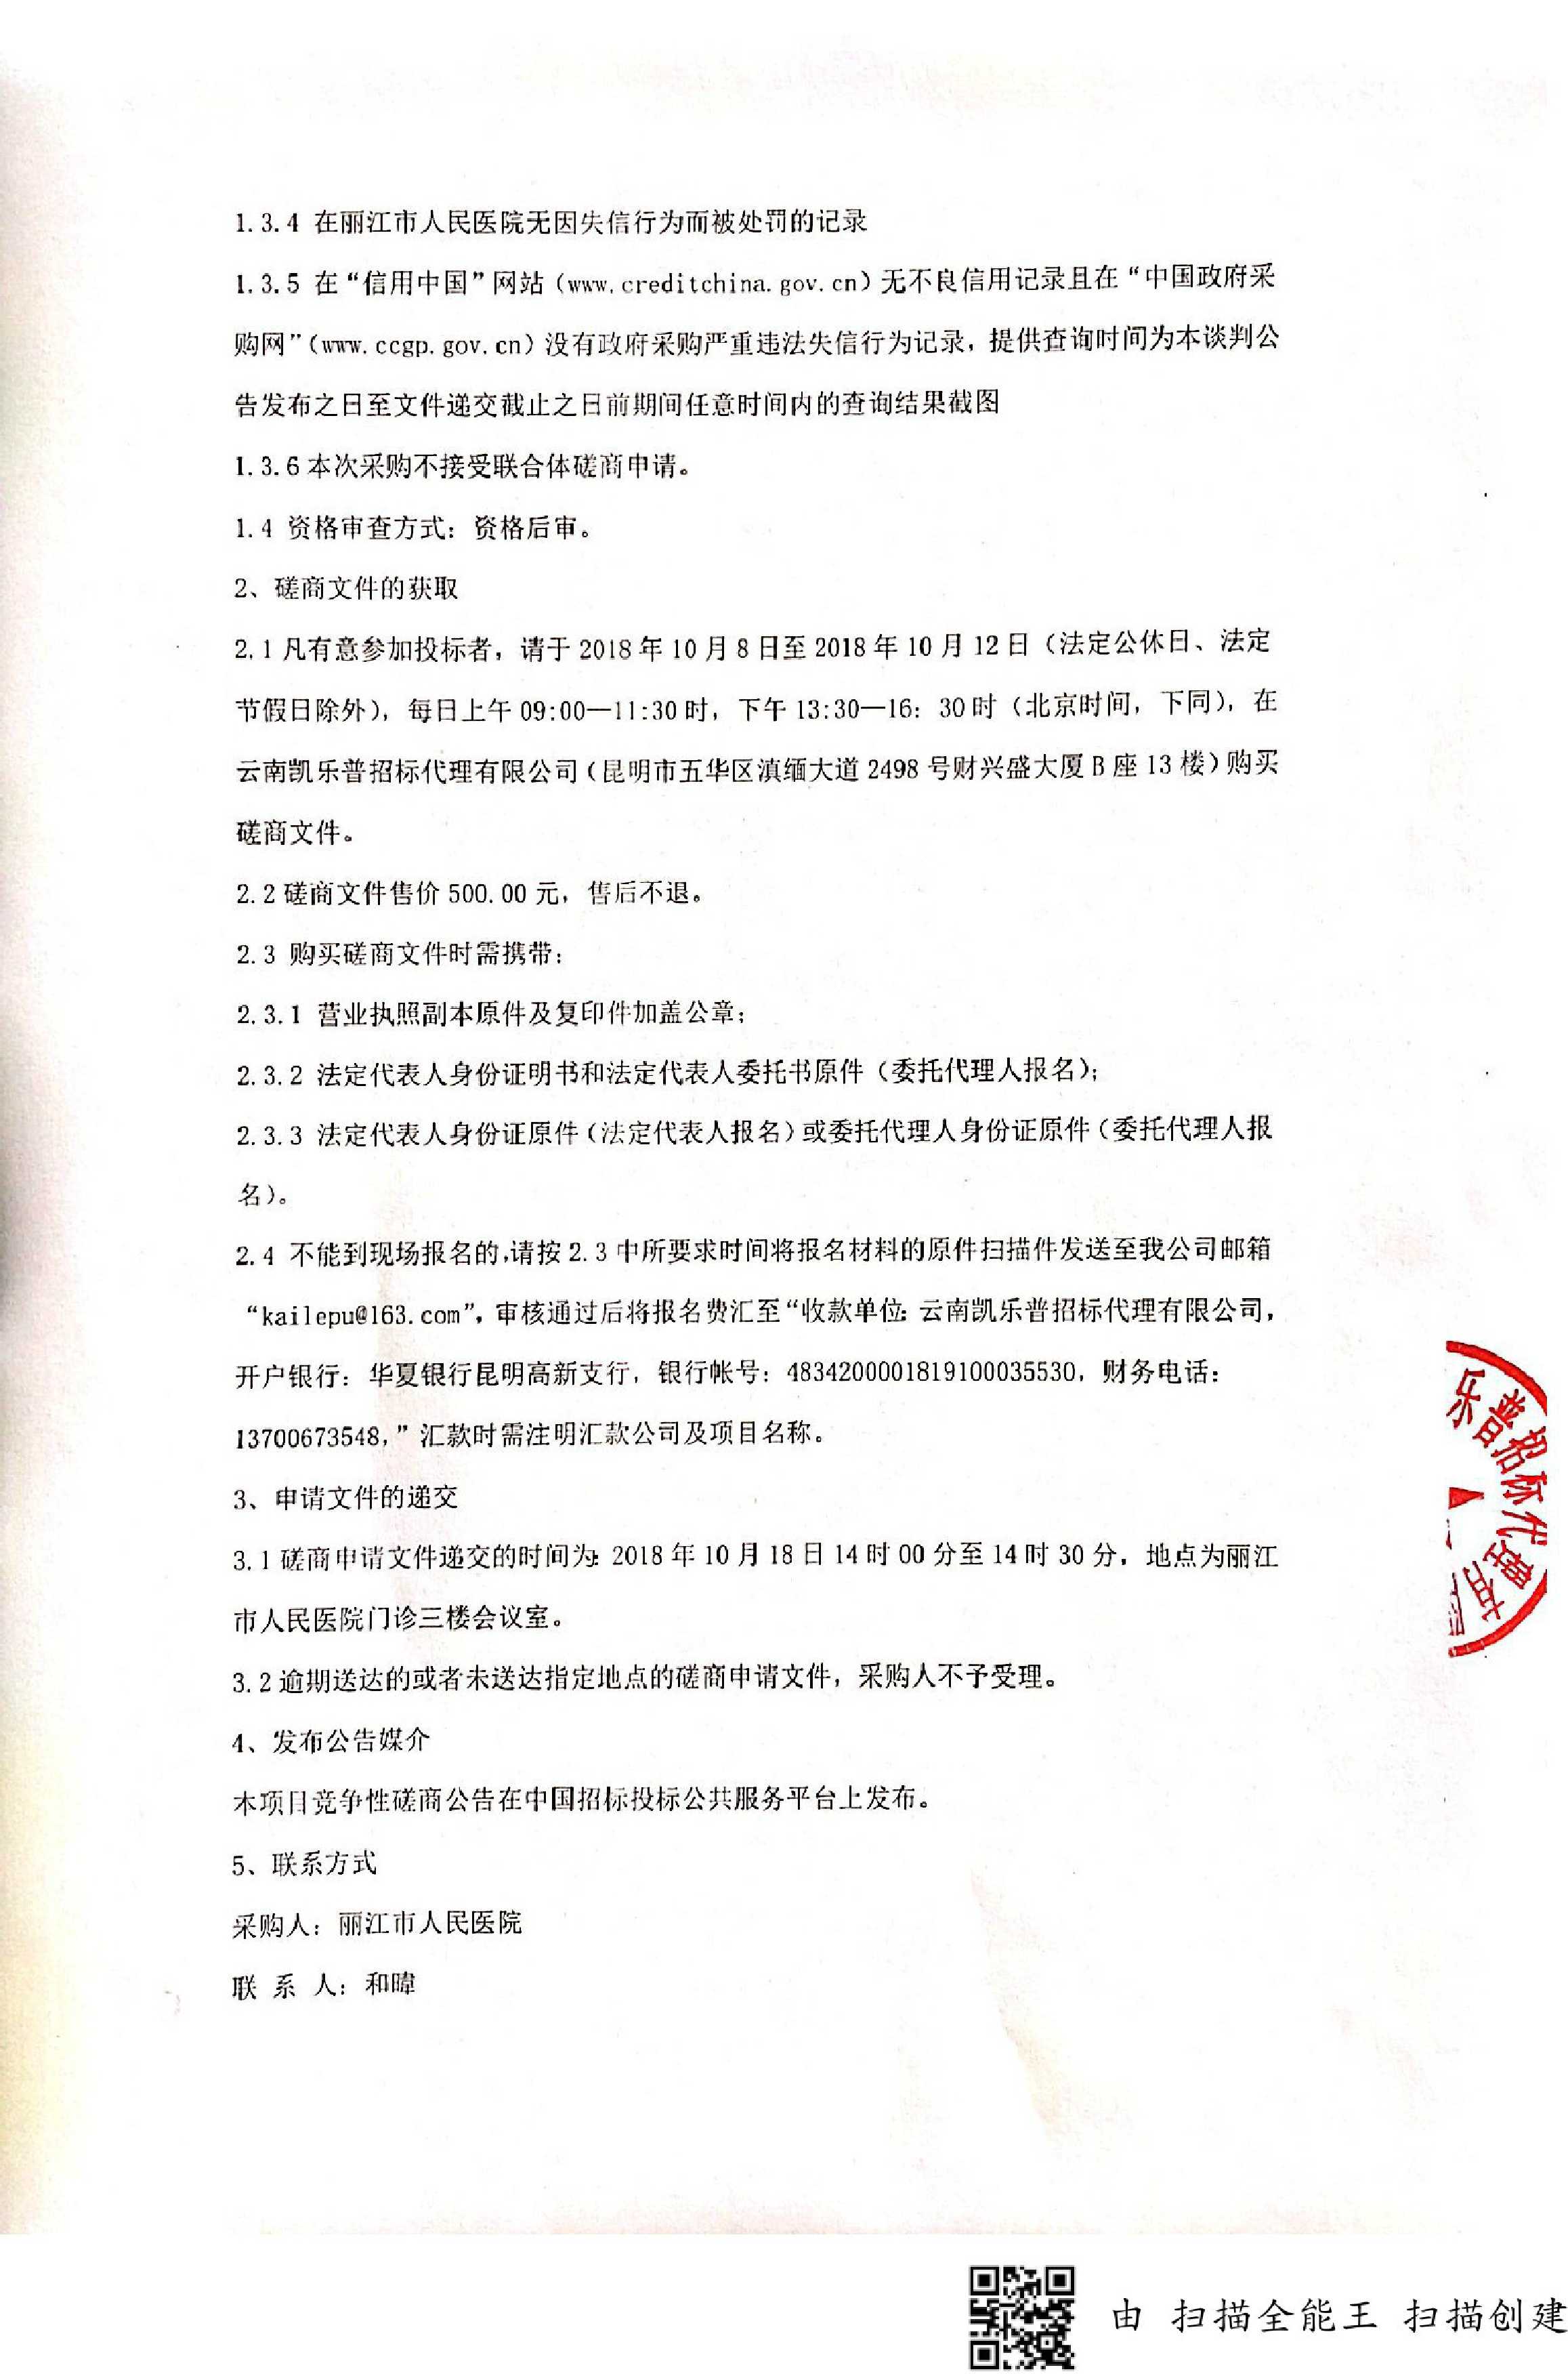 丽江市人民医院医用智能物资供应链管理服务系